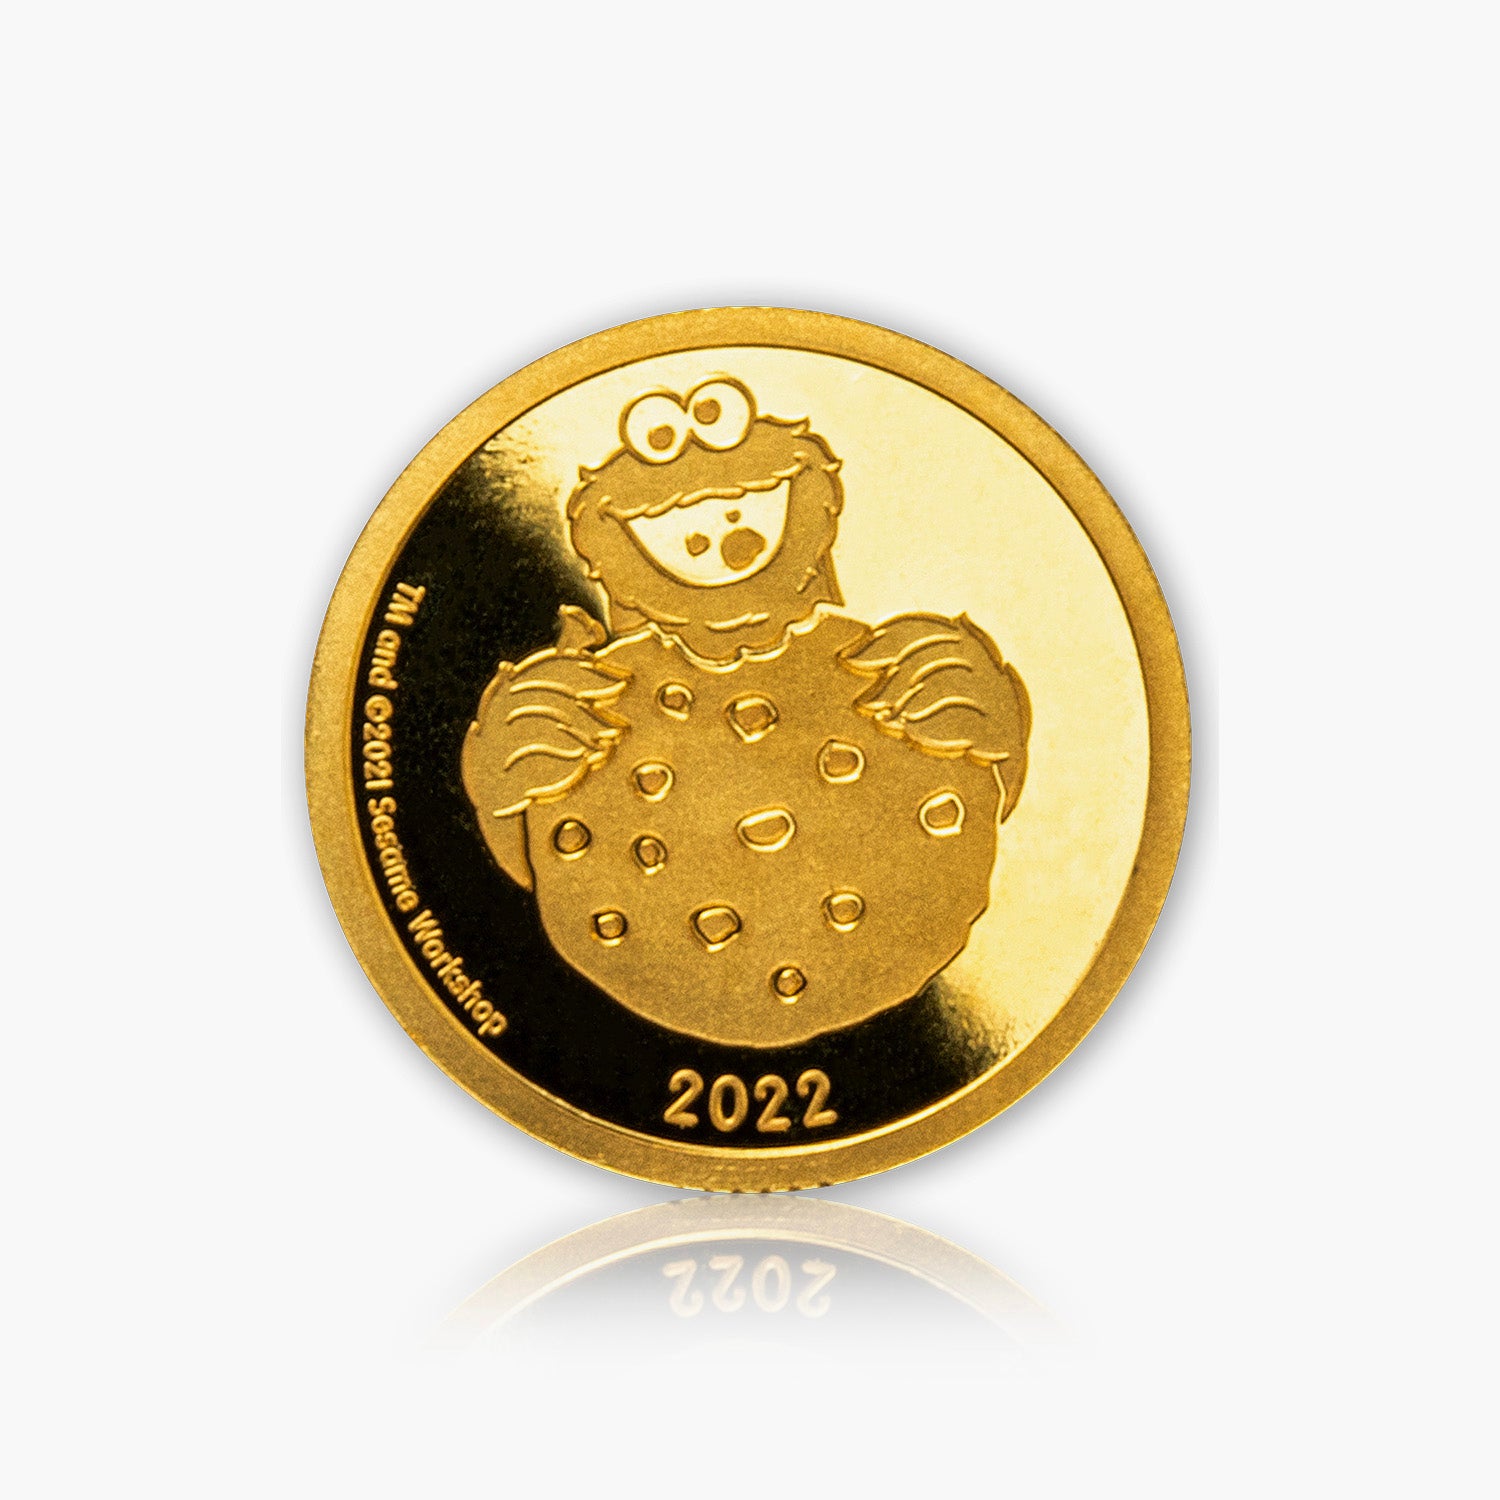 セサミストリート クッキーモンスター 0.5g ゴールドコイン